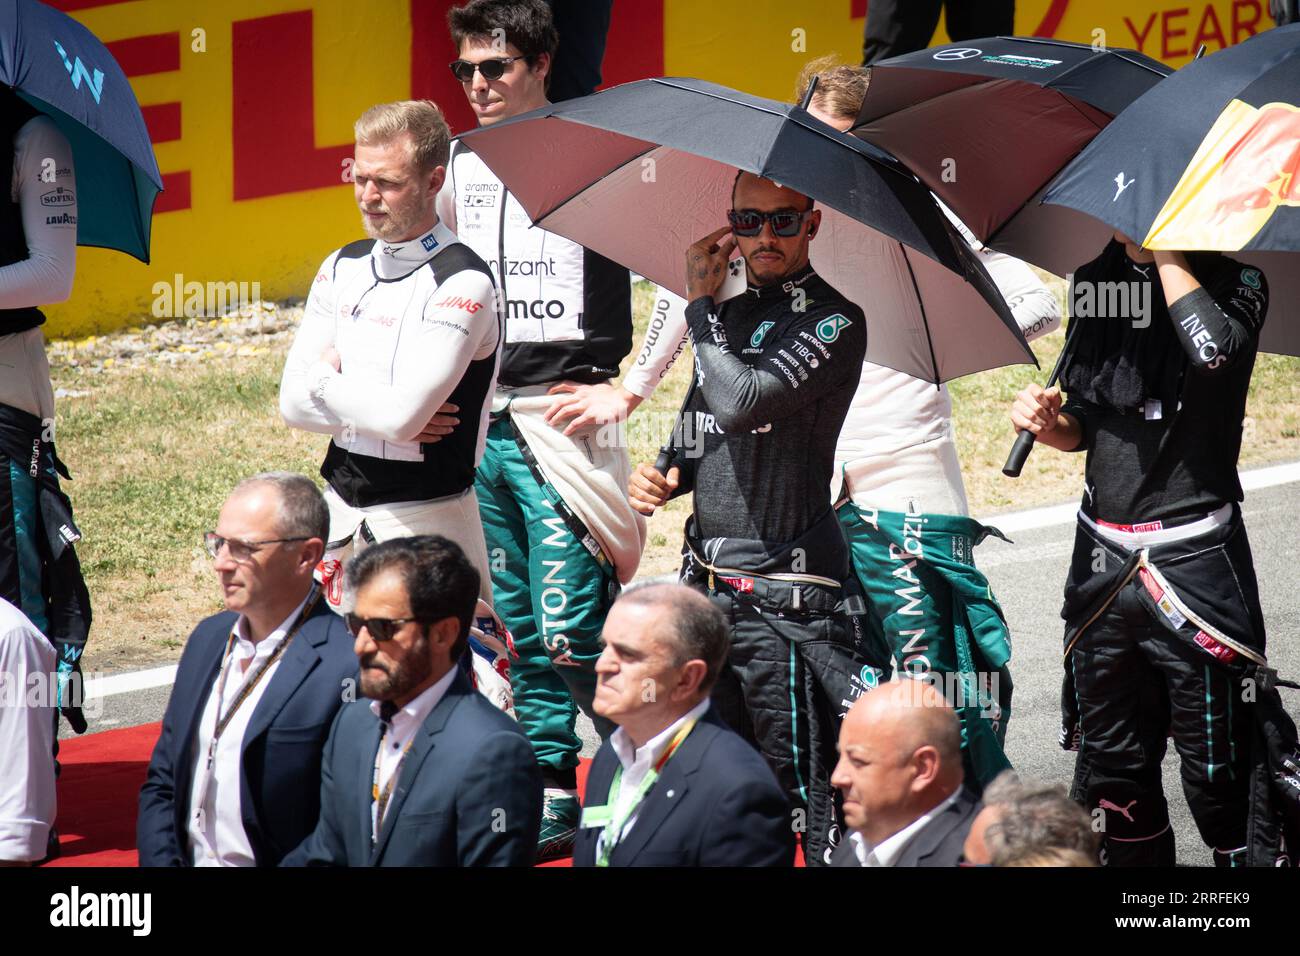 Il campione di F1 Lewis Hamilton indossa la sua tuta da gara, tenendo un ombrello durante un evento pre-gara, incapsulando un momento di calma prima dello stor delle corse Foto Stock